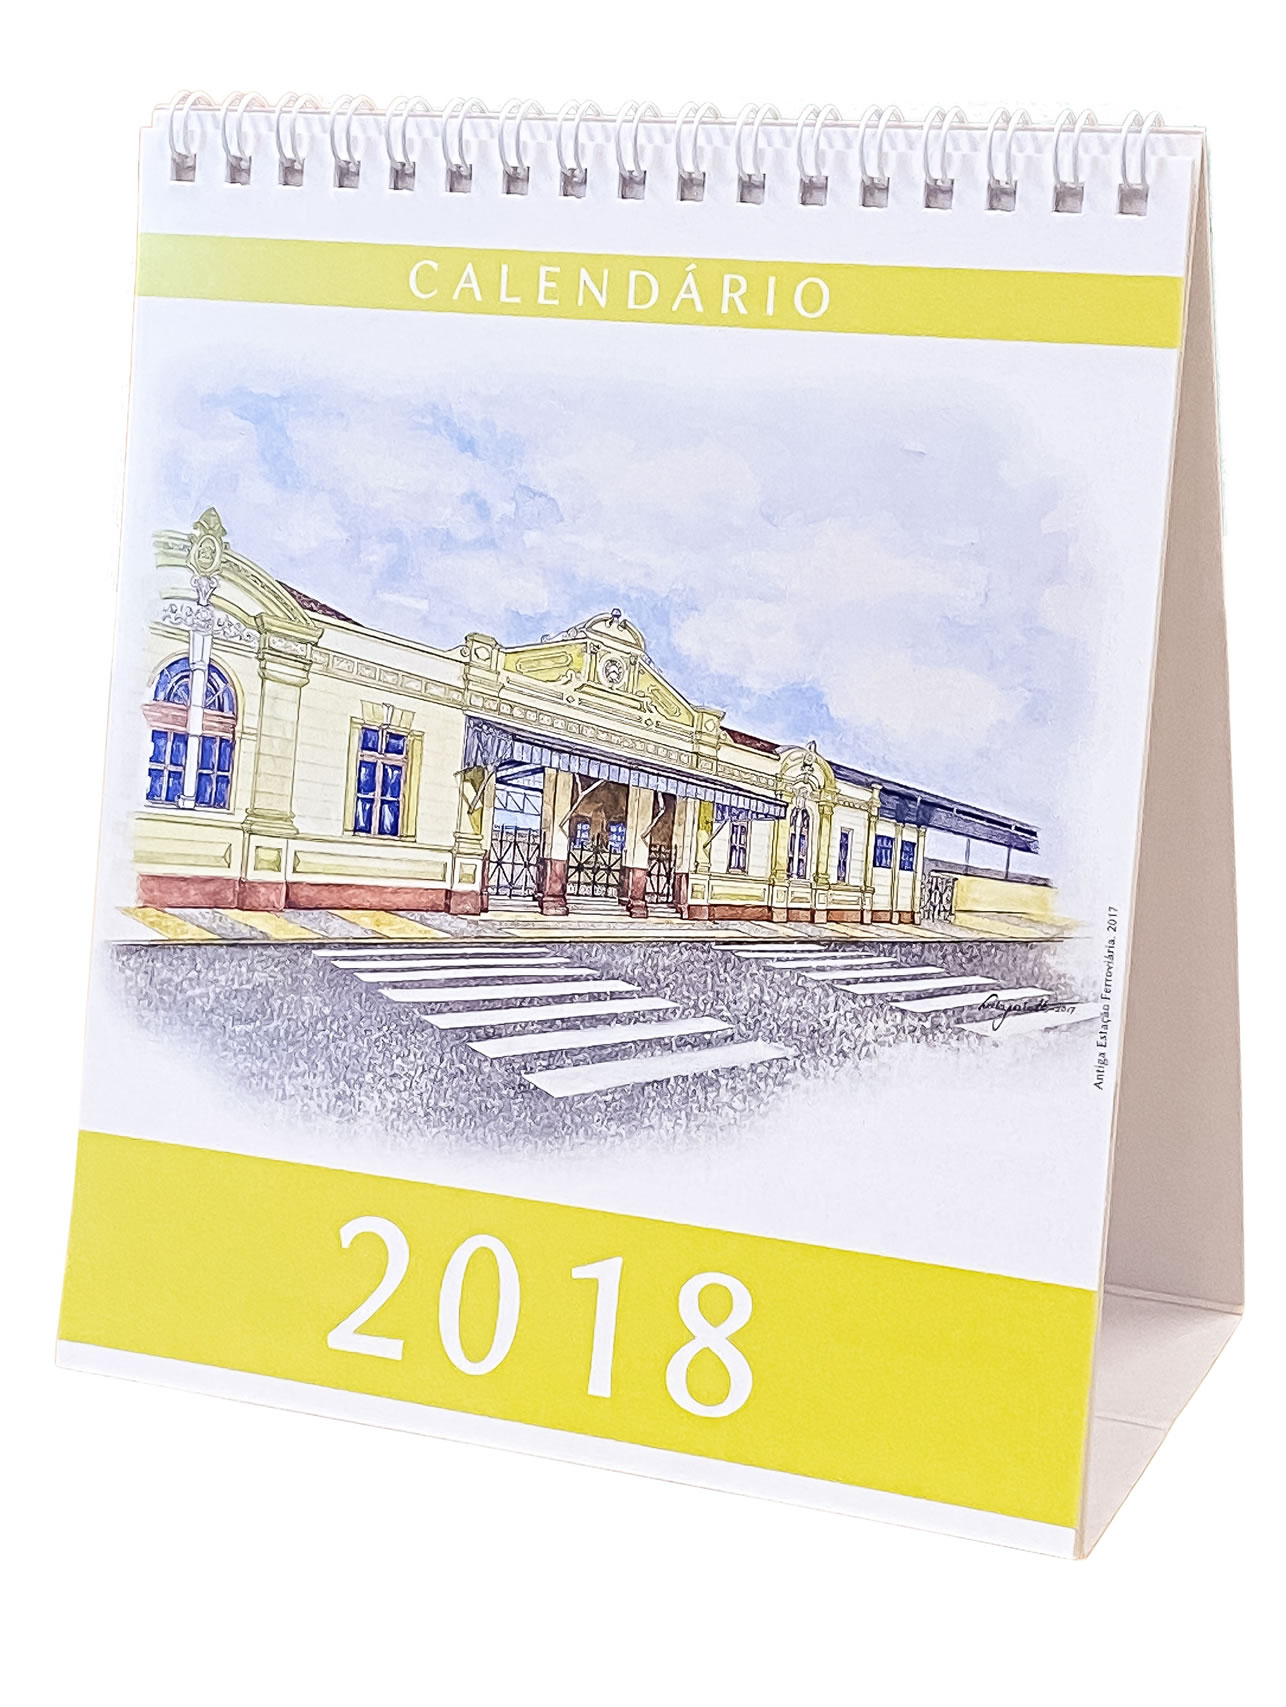 Calendário rio-clarense 2018